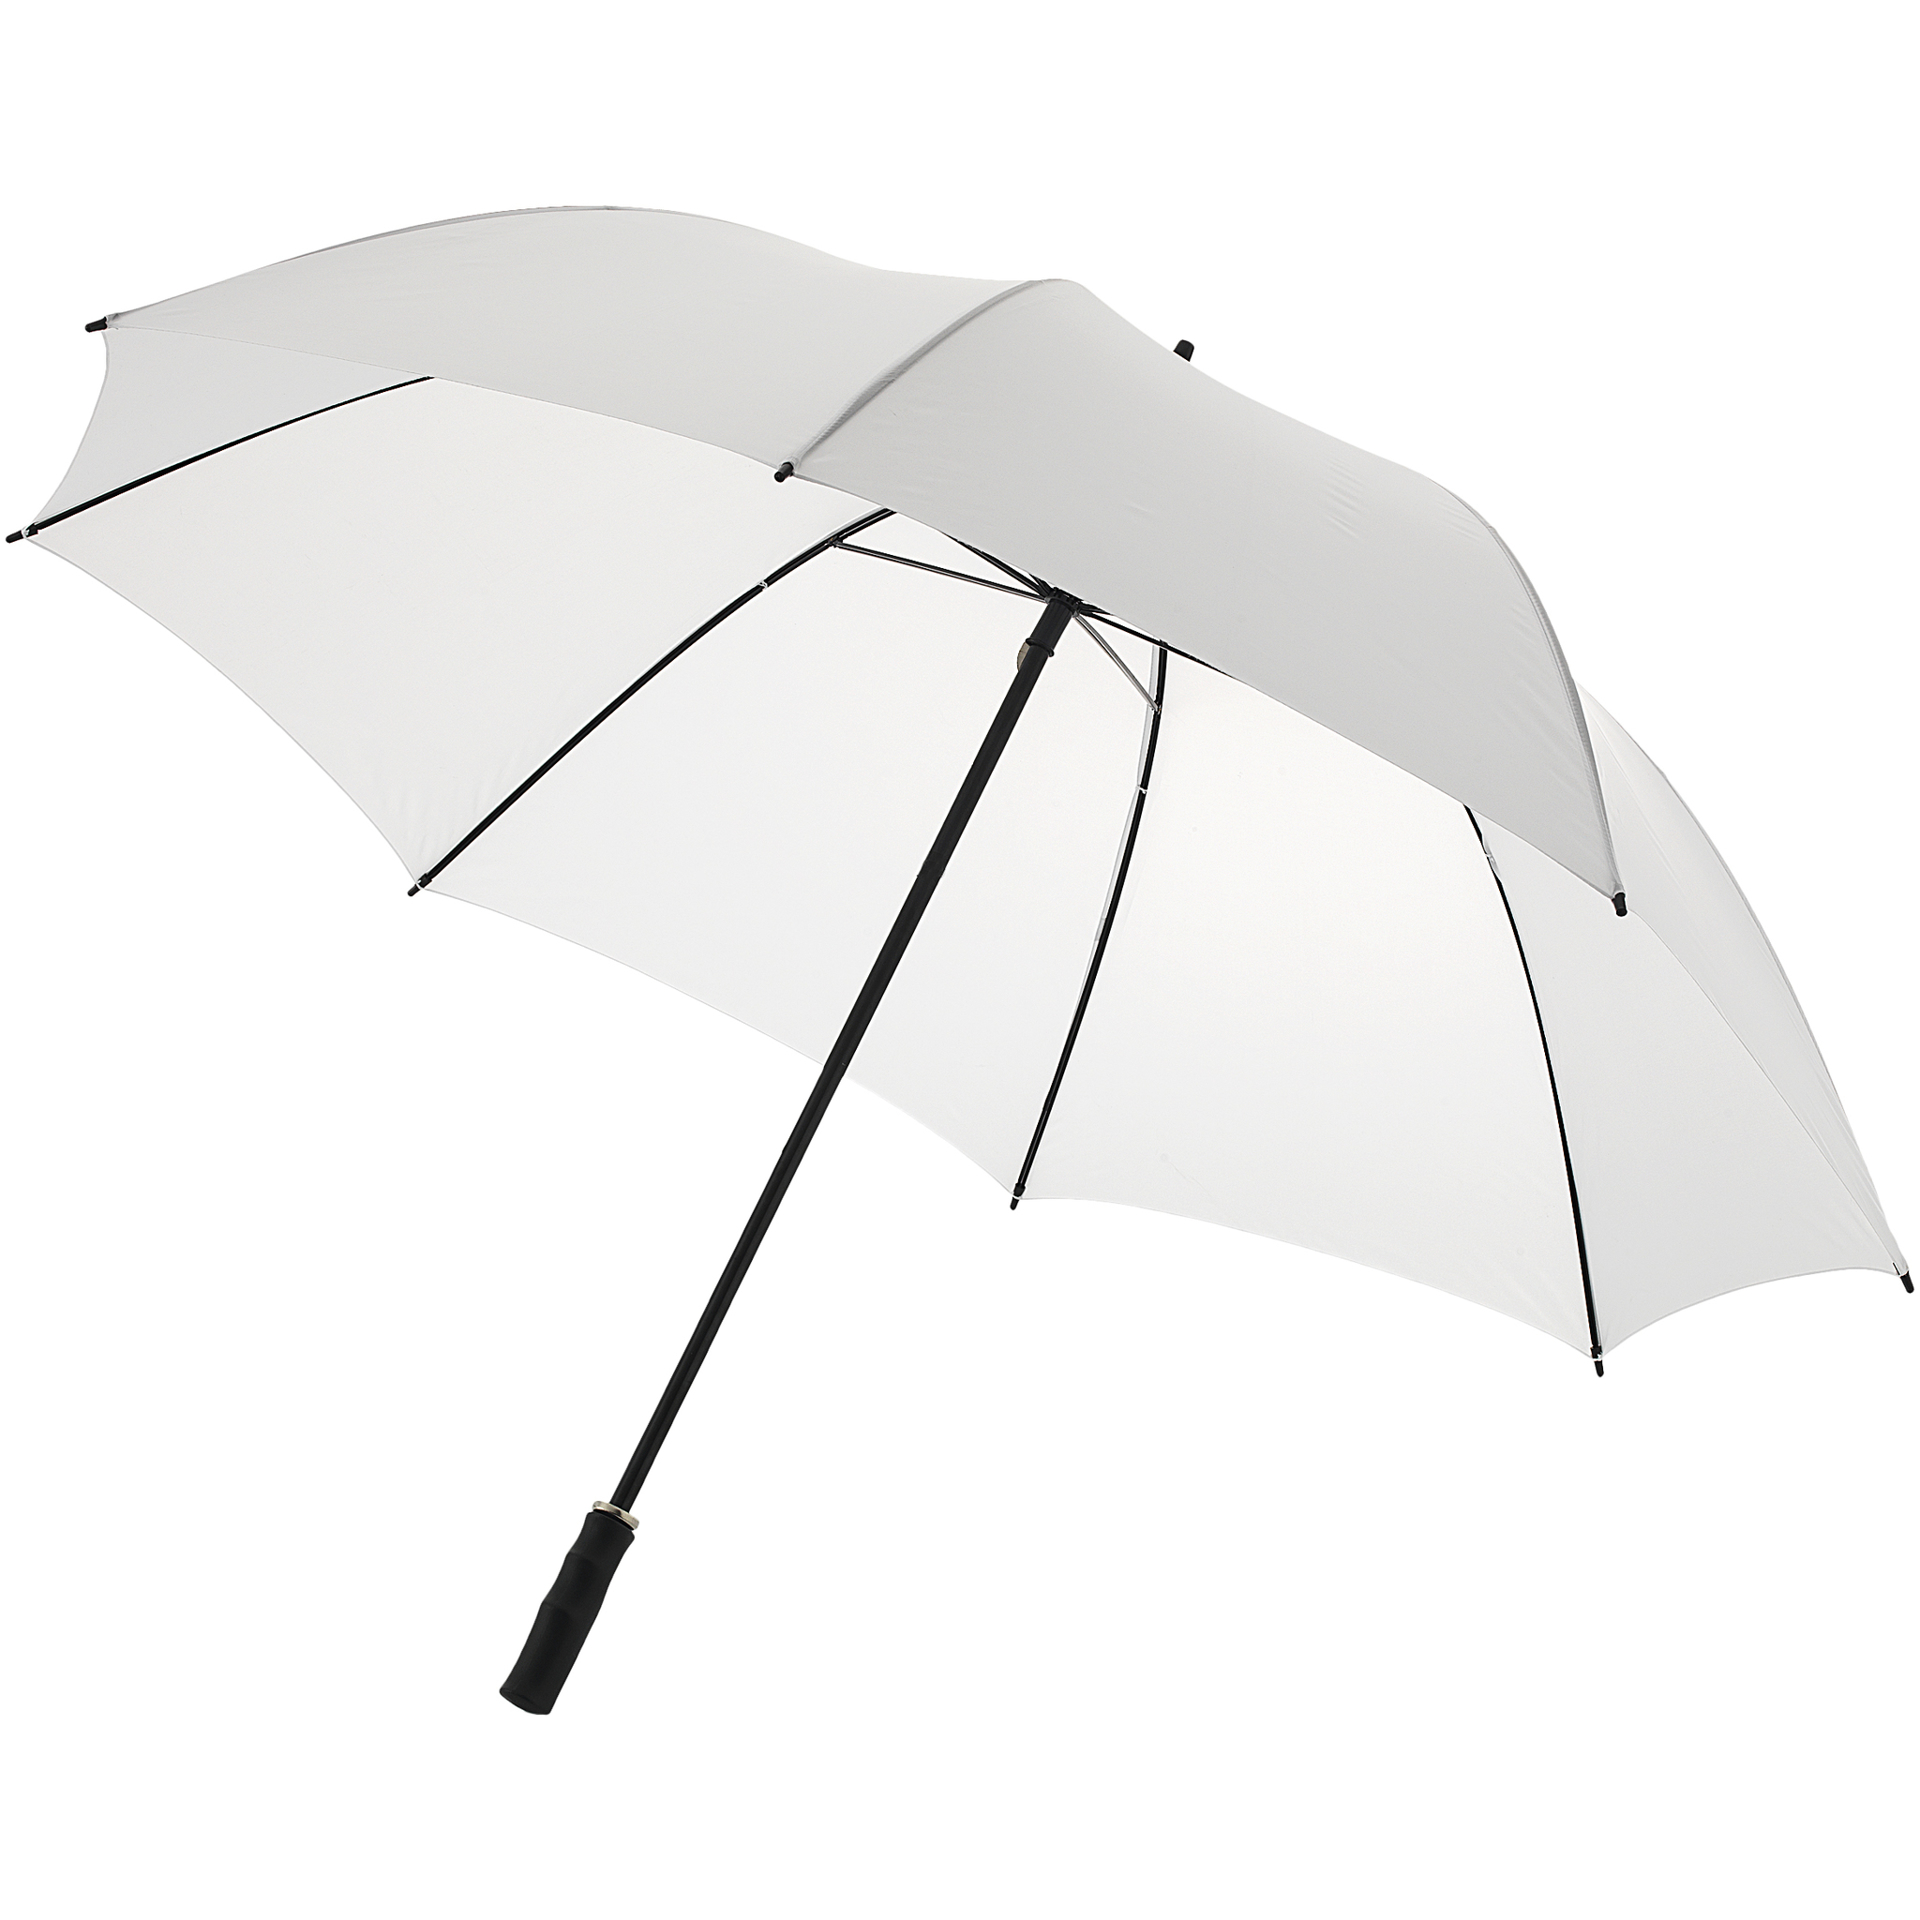 30 inch Golf Umbrella in white